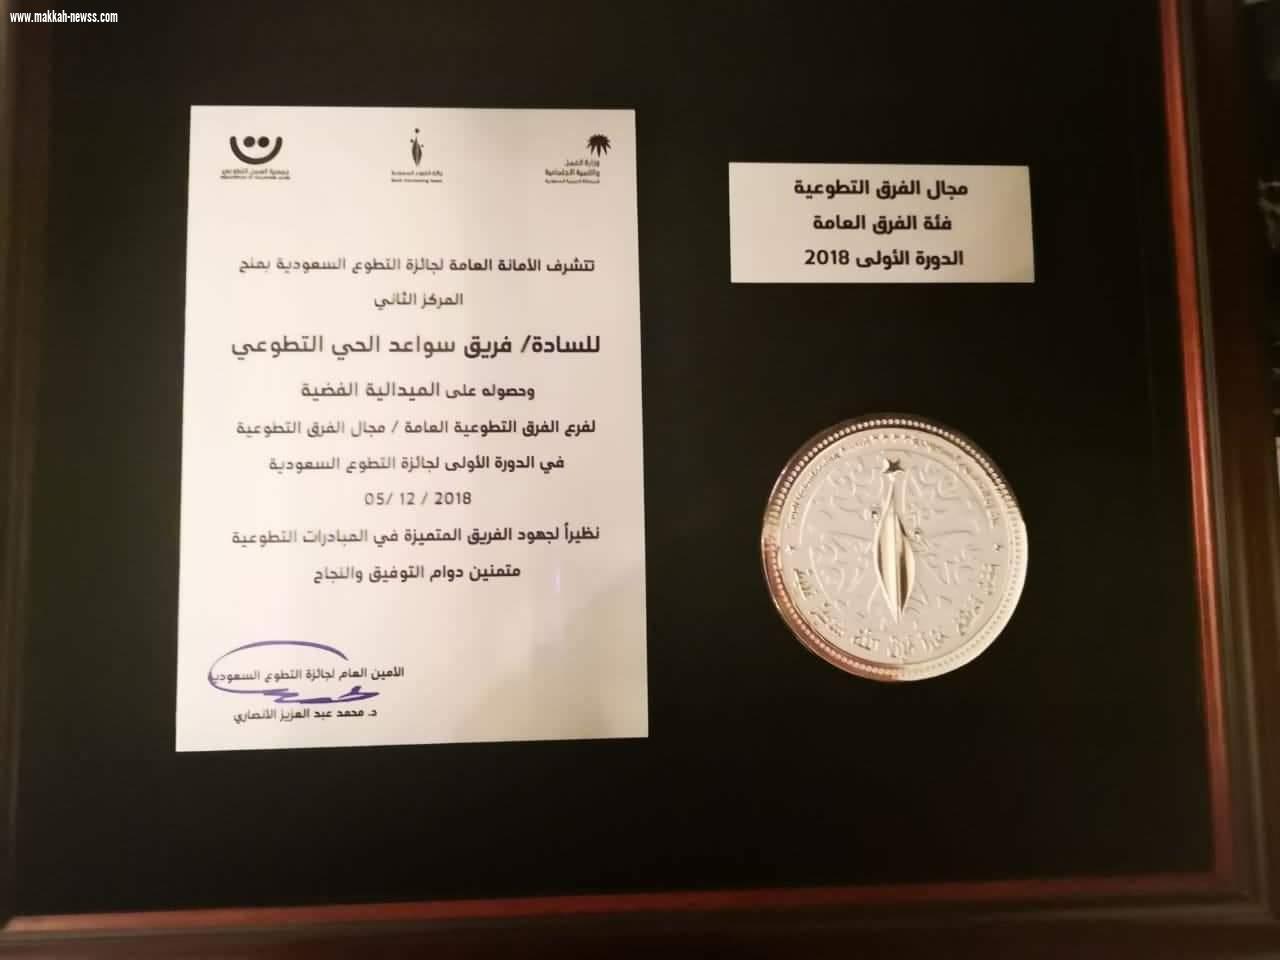 مبادرة سواعد الحي التطوعي بمركز حي المسفلة تحصد جائزة التطوع السعودية  الأولى بالمنطقة الشرقية